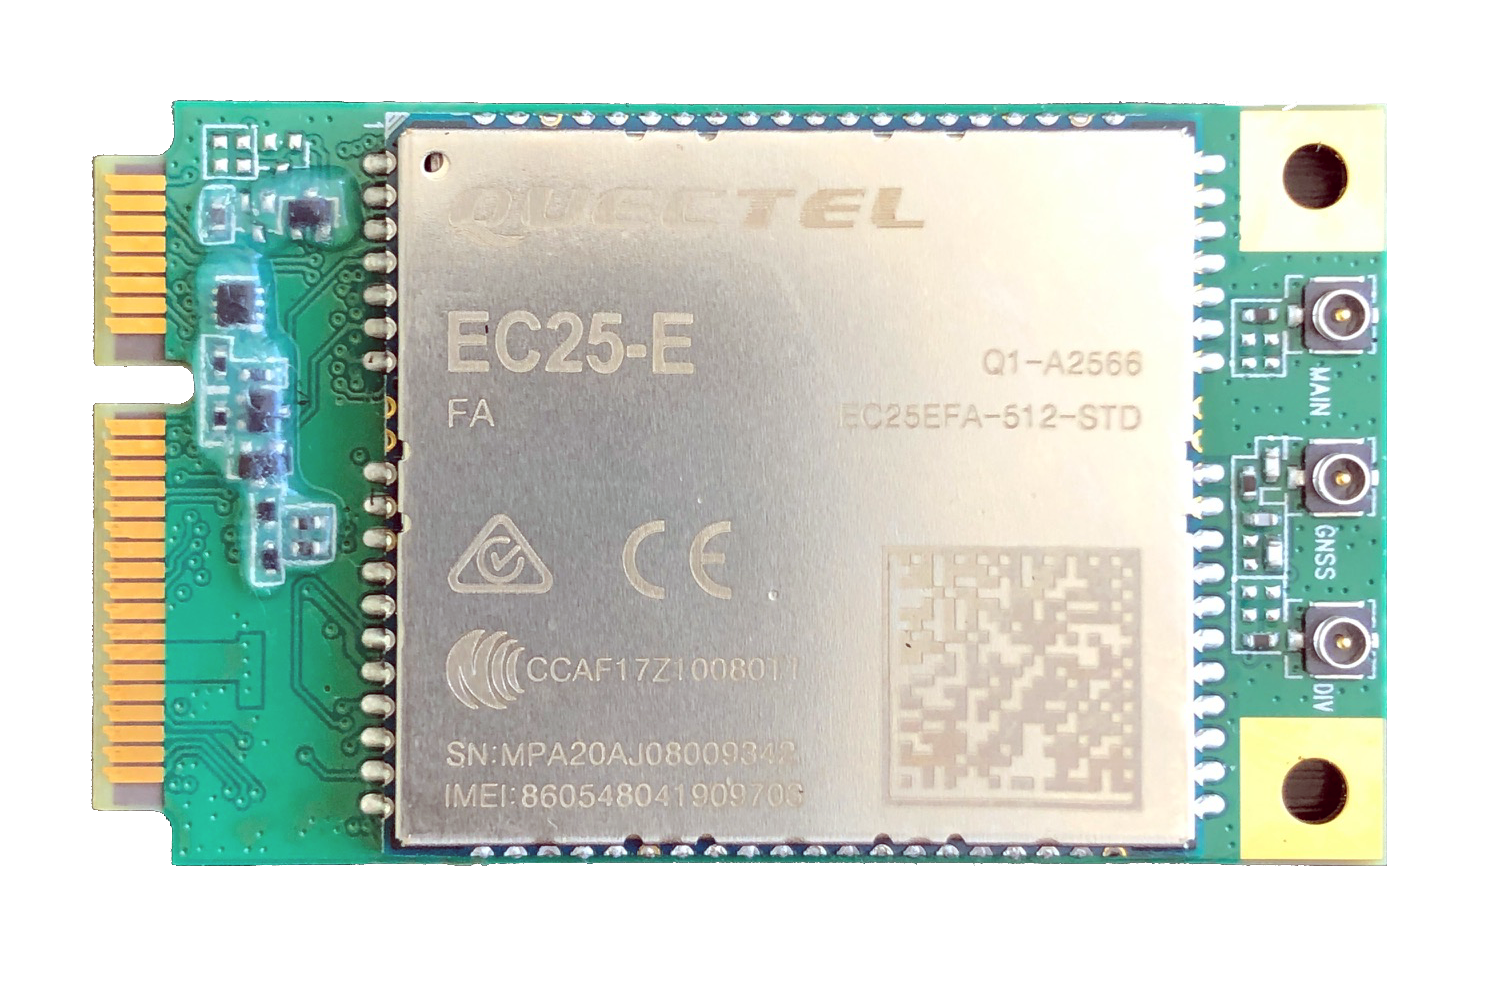 EC25-E miniPCIE - Quectel 4G LTE Cat4 miniPCIE card - 150Mbps for EMEA